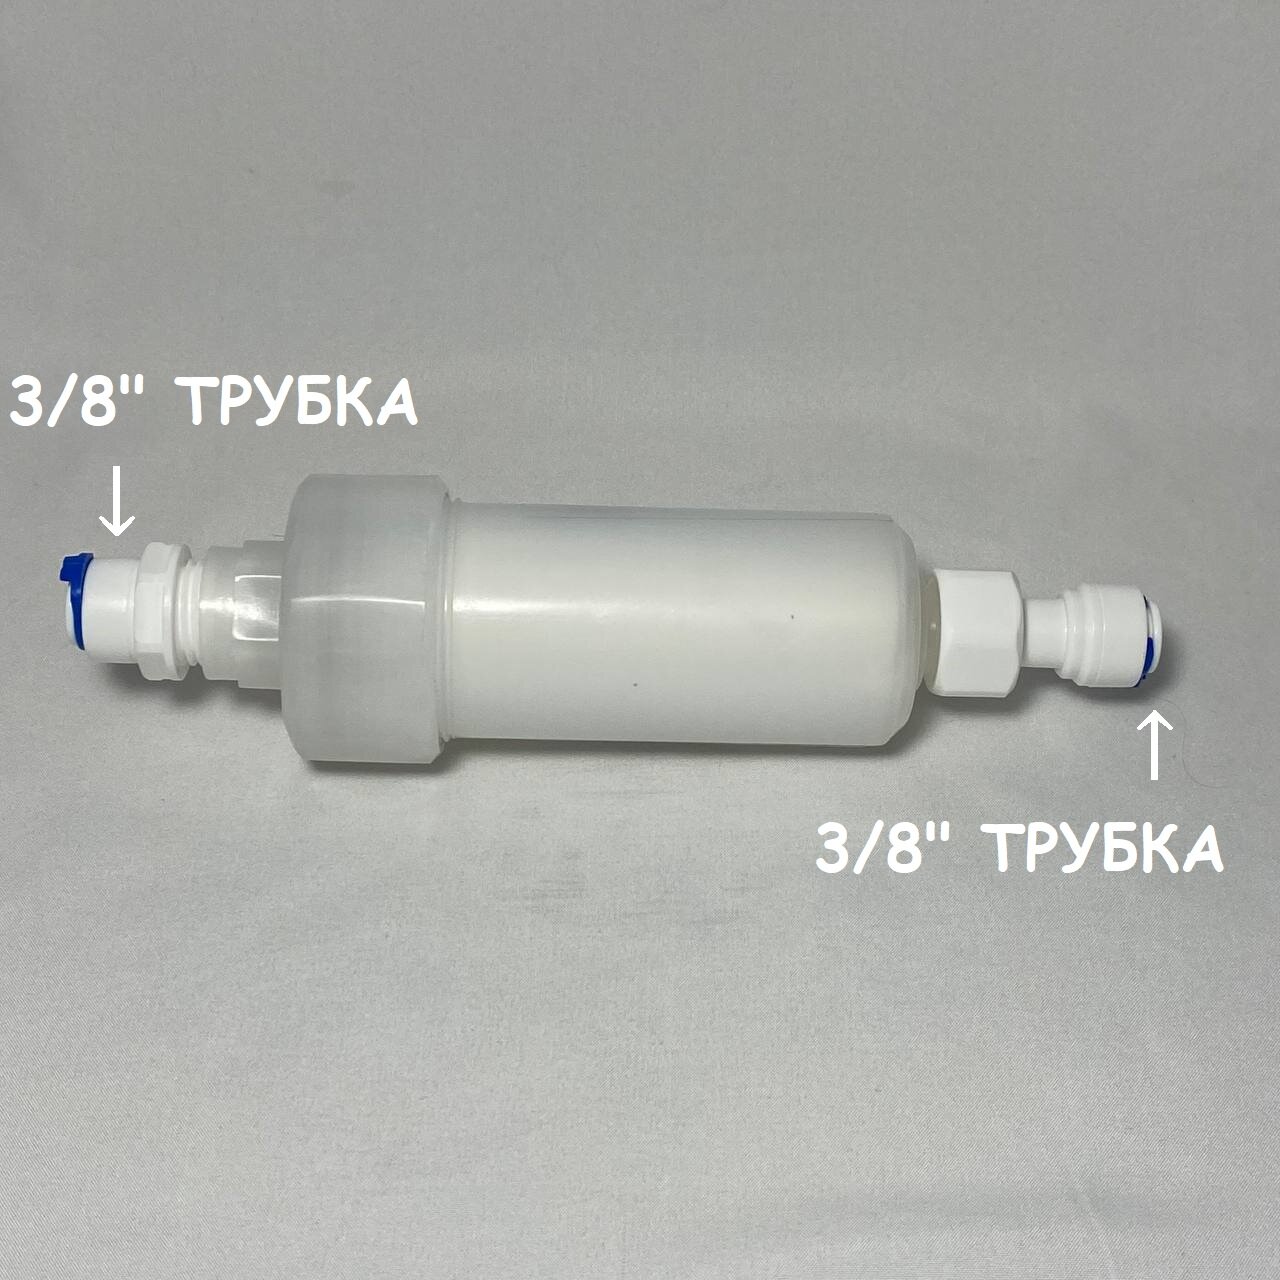 Фильтр механический UFAFILTER со сменным картриджем 5 микрон перед фильтром воды с фитингами 3/8" трубка (Аквафор Морион, DWM)